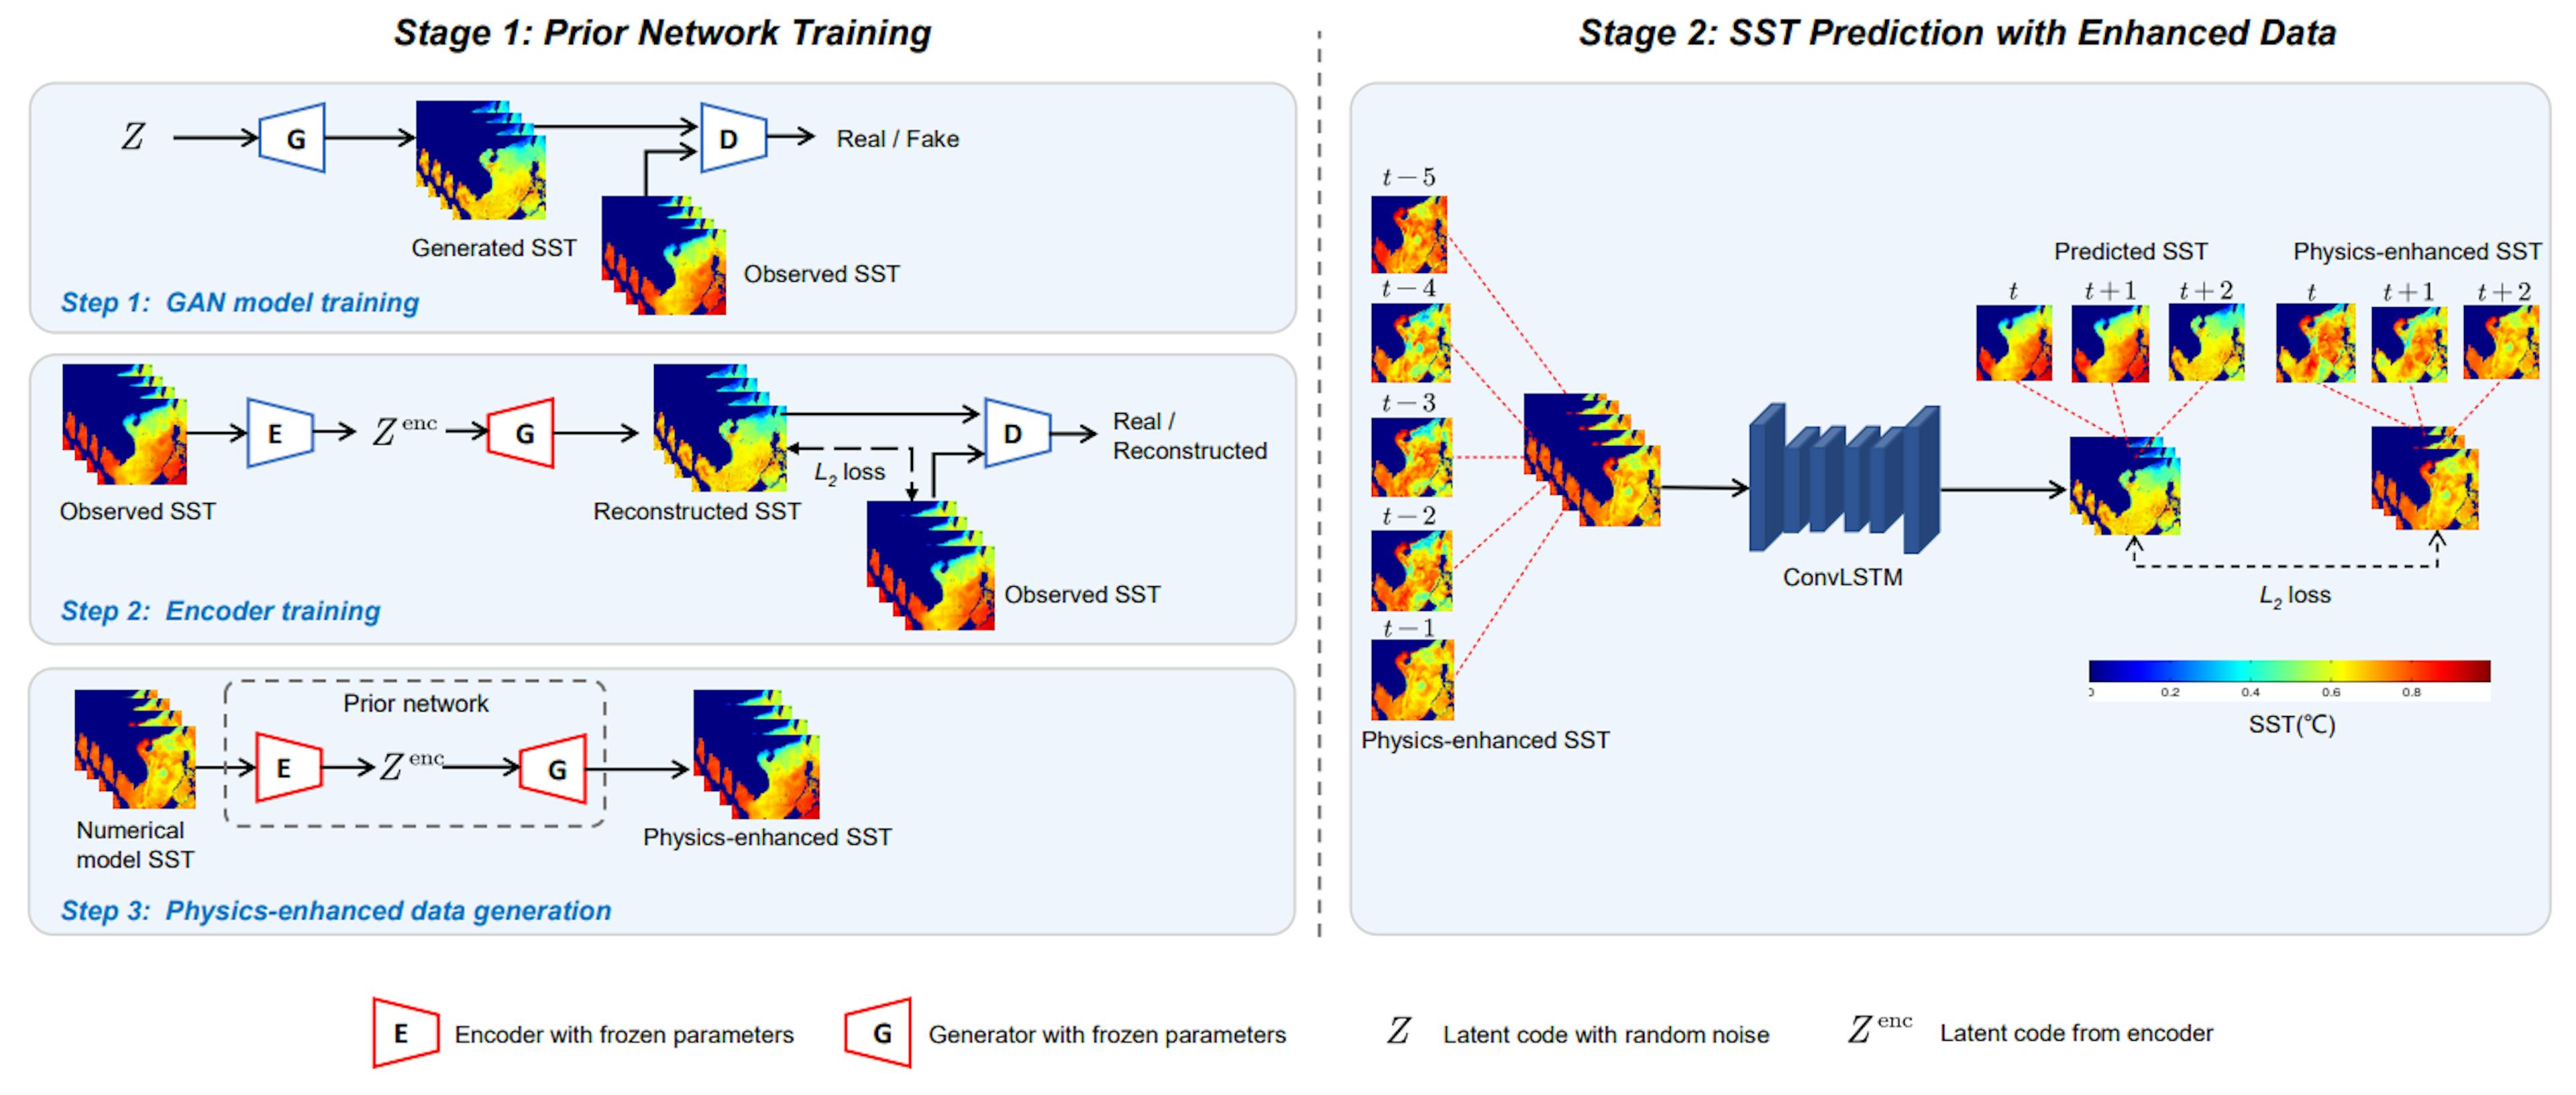 图 2. 所提出的 SST 预测方法的说明。它包括两个阶段：先前网络训练和使用增强数据的 SST 预测。在第一阶段，训练先前网络以生成物理增强的 SST。在第二阶段，通过 ConvLSTM 使用物理增强的 SST 进行 SST 预测。